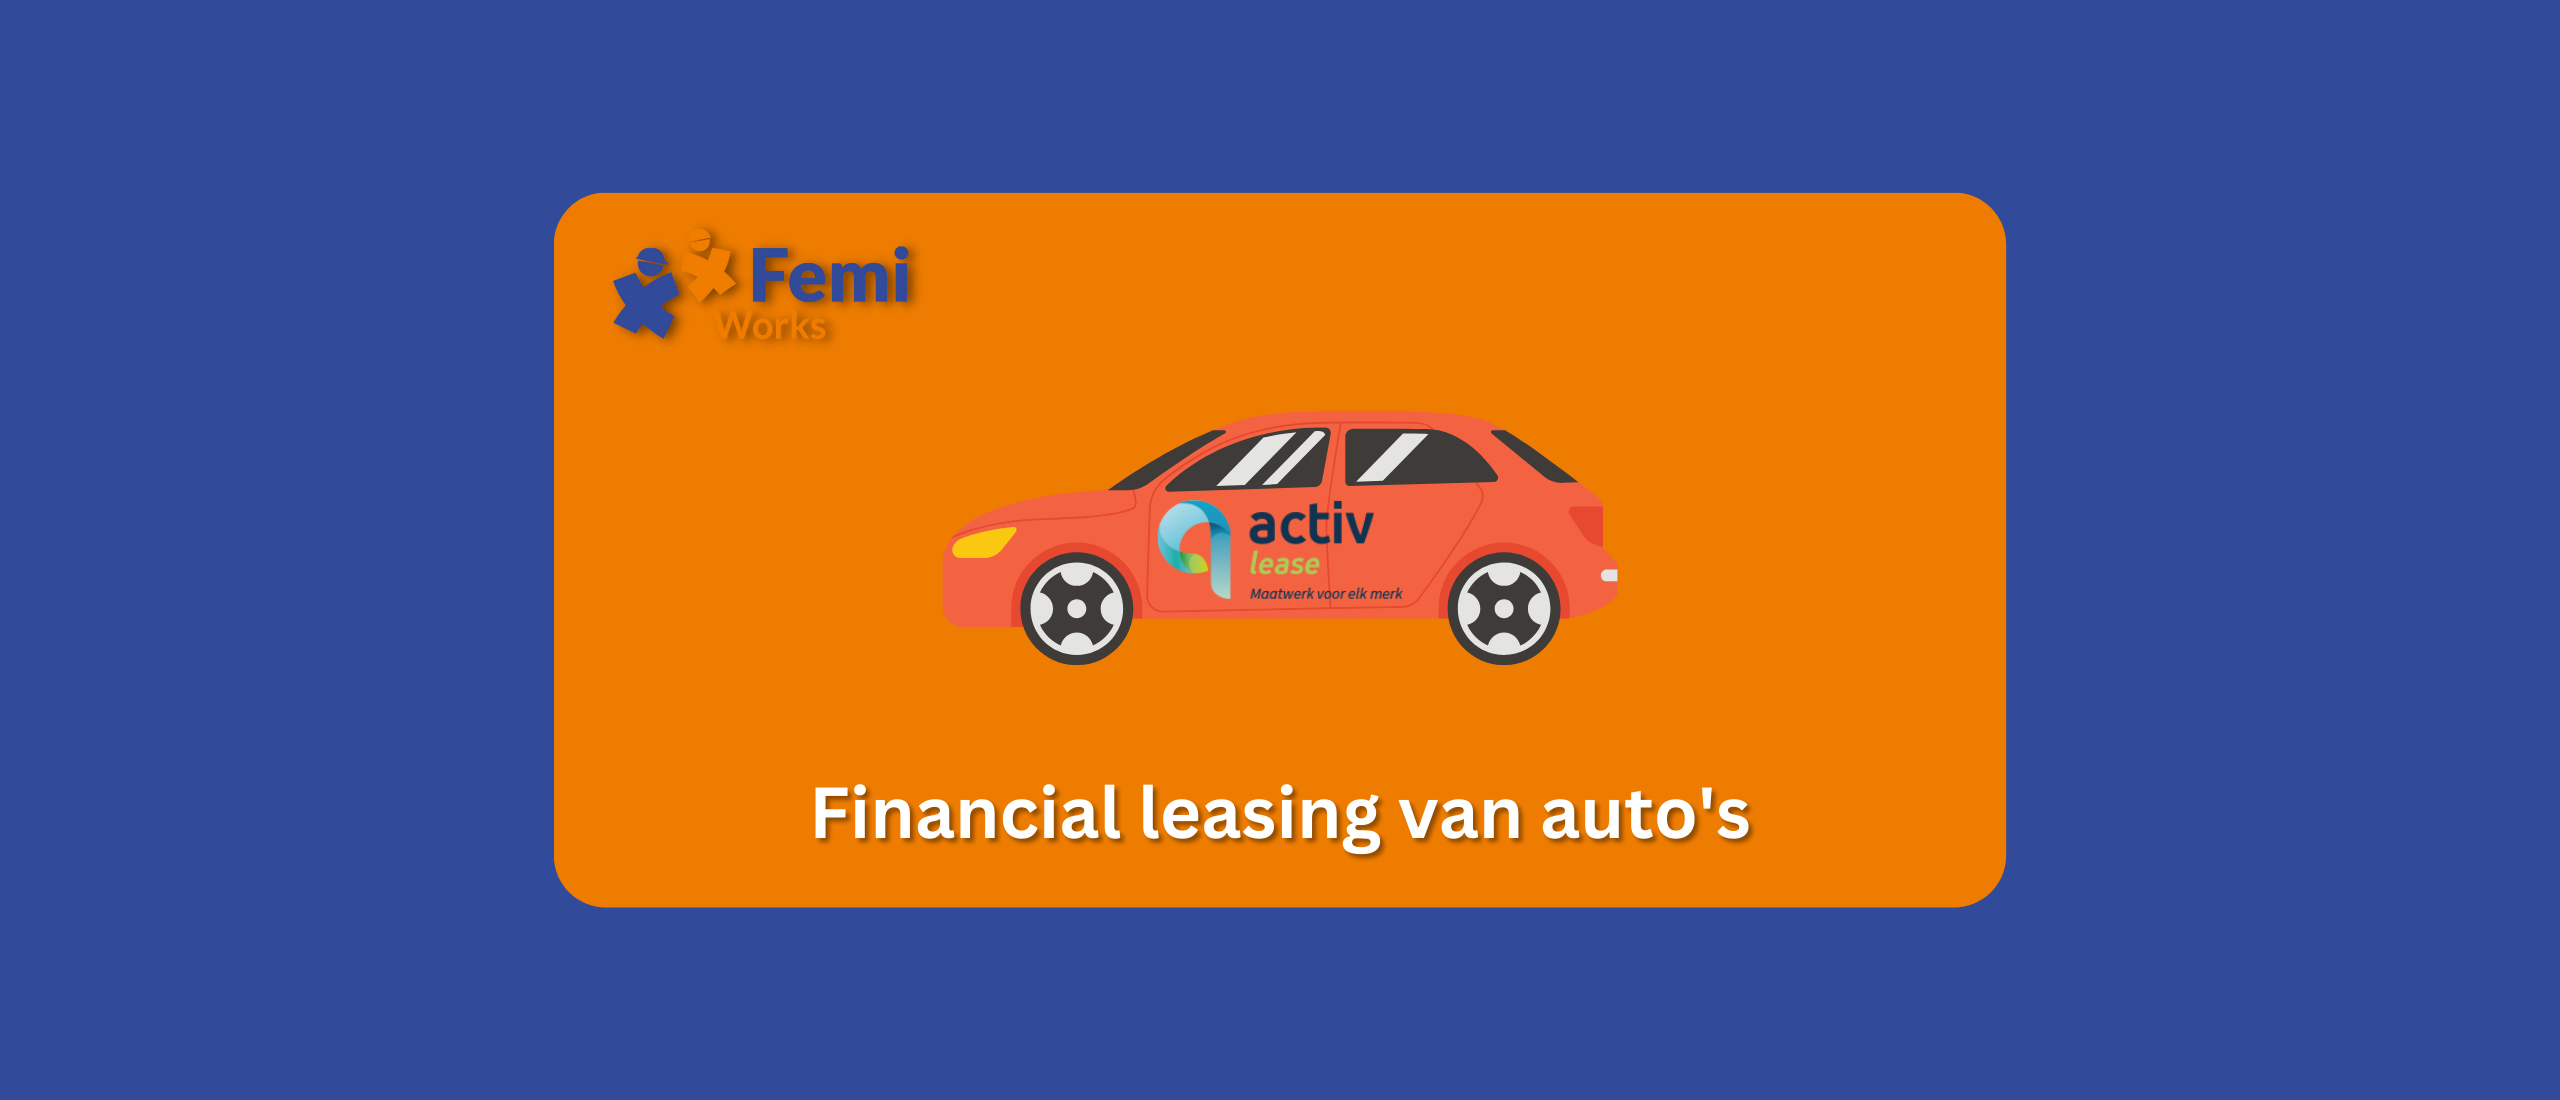 Financial leasing van auto's